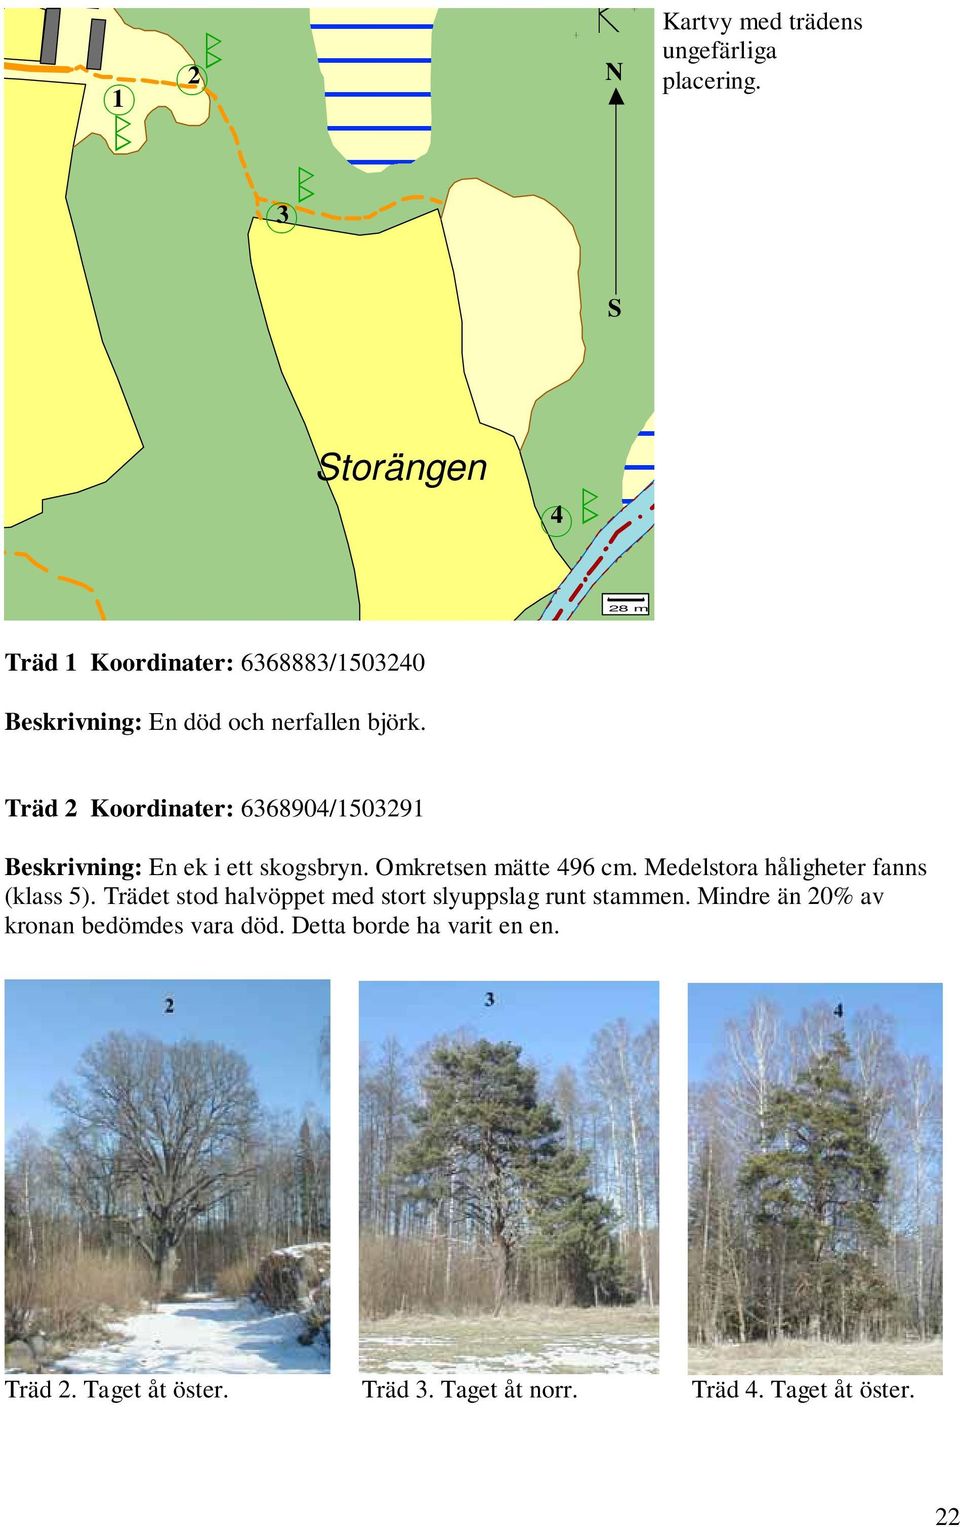 Träd Koordinater: 668904/509 Beskrivning: En ek i ett skogsryn. Omkretsen mätte 496 cm.